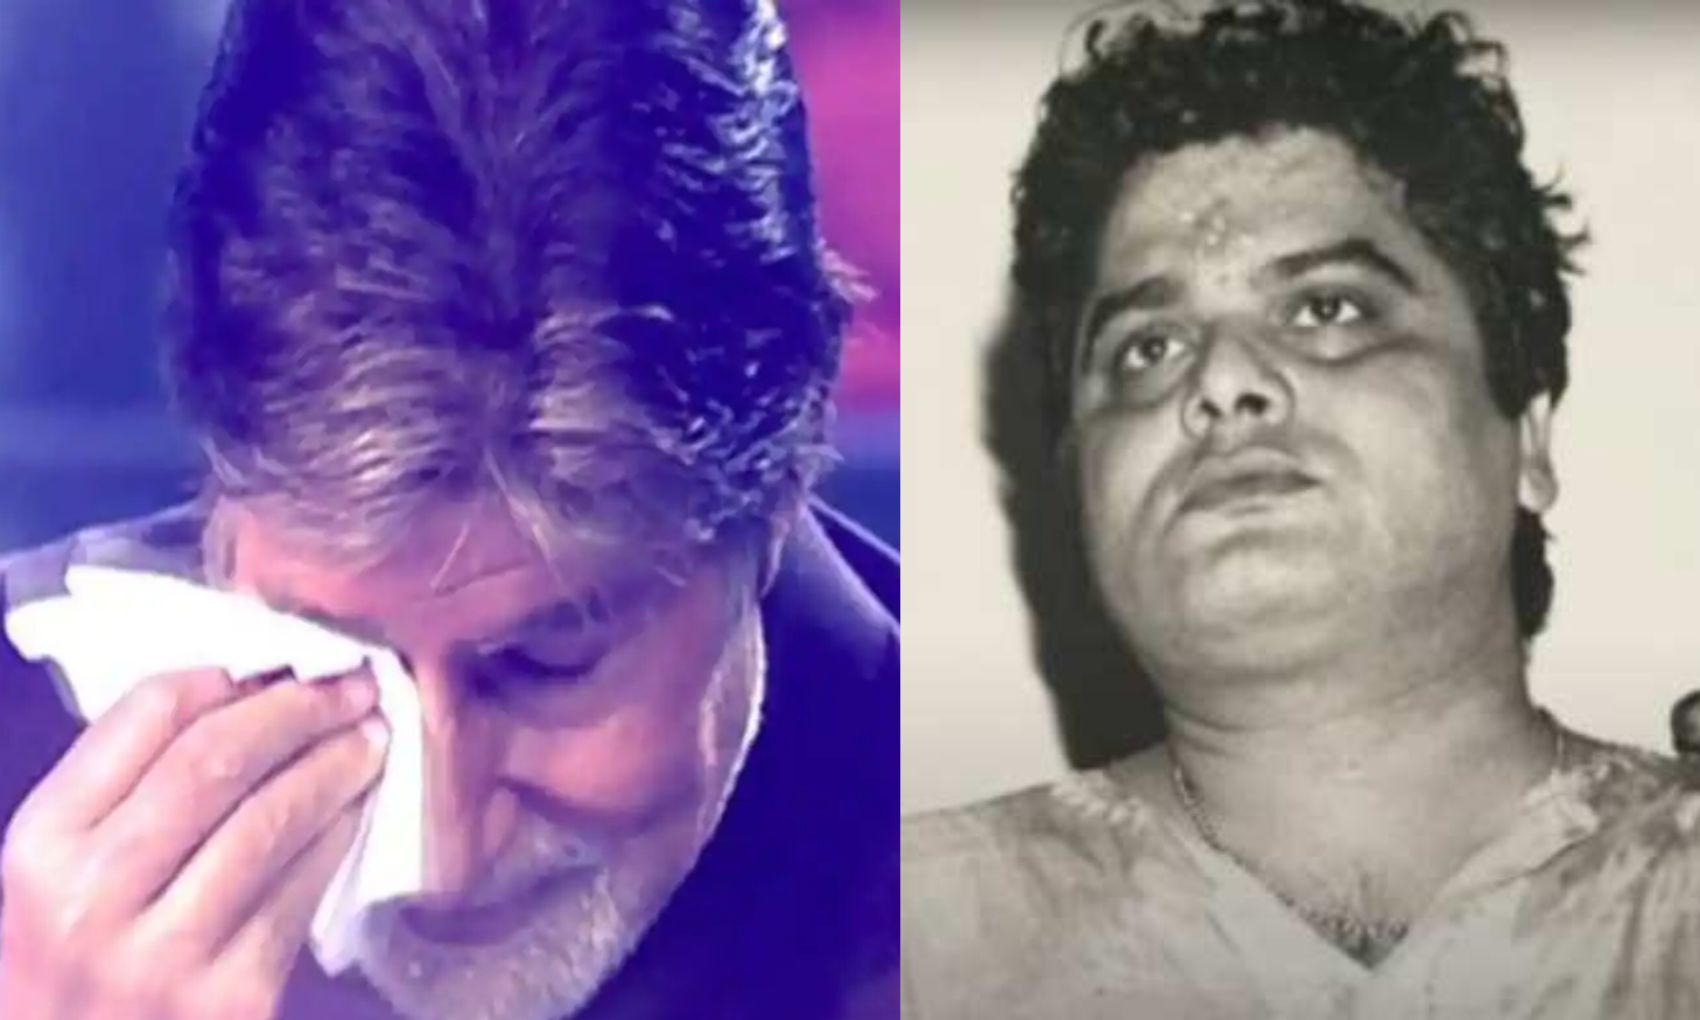 डायरेक्टर राकेश कुमार के अंतिम संस्कार में नहीं पहुंचे अमिताभ बच्चन का छलका दर्द, कहा- “मैं नहीं देख पाऊंगा”